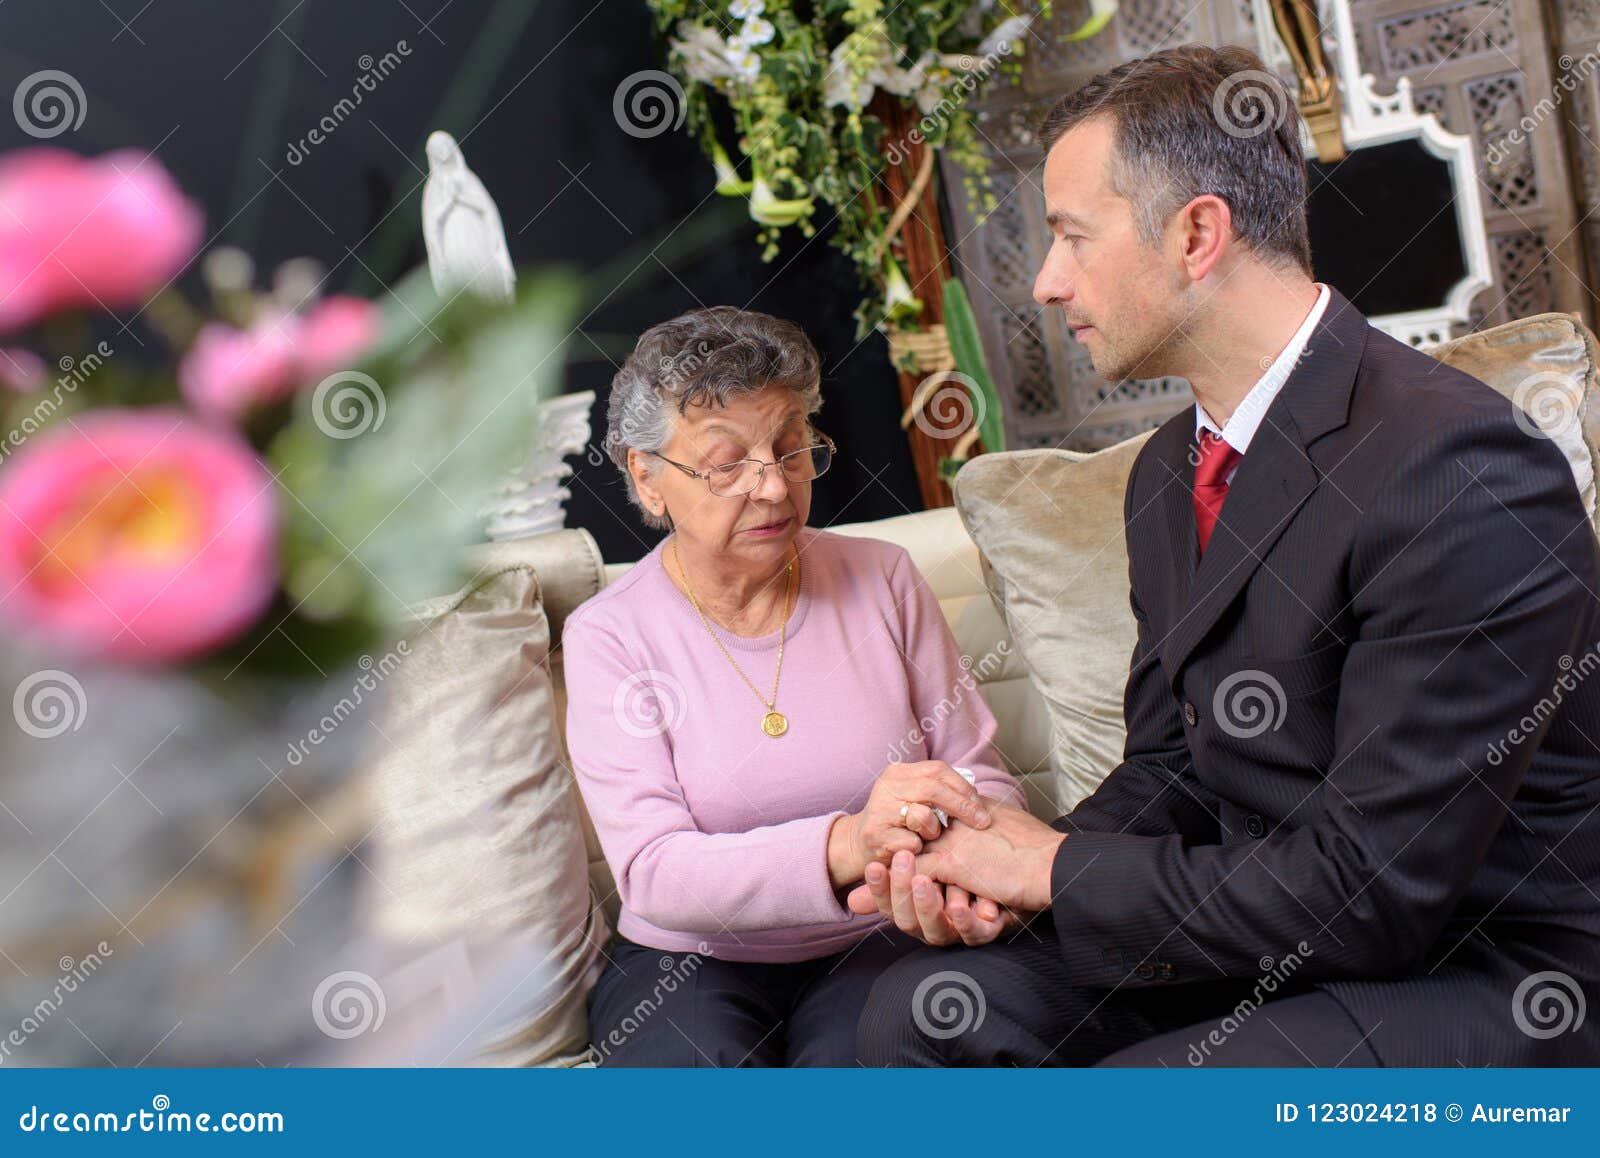 funeral director comforting woman